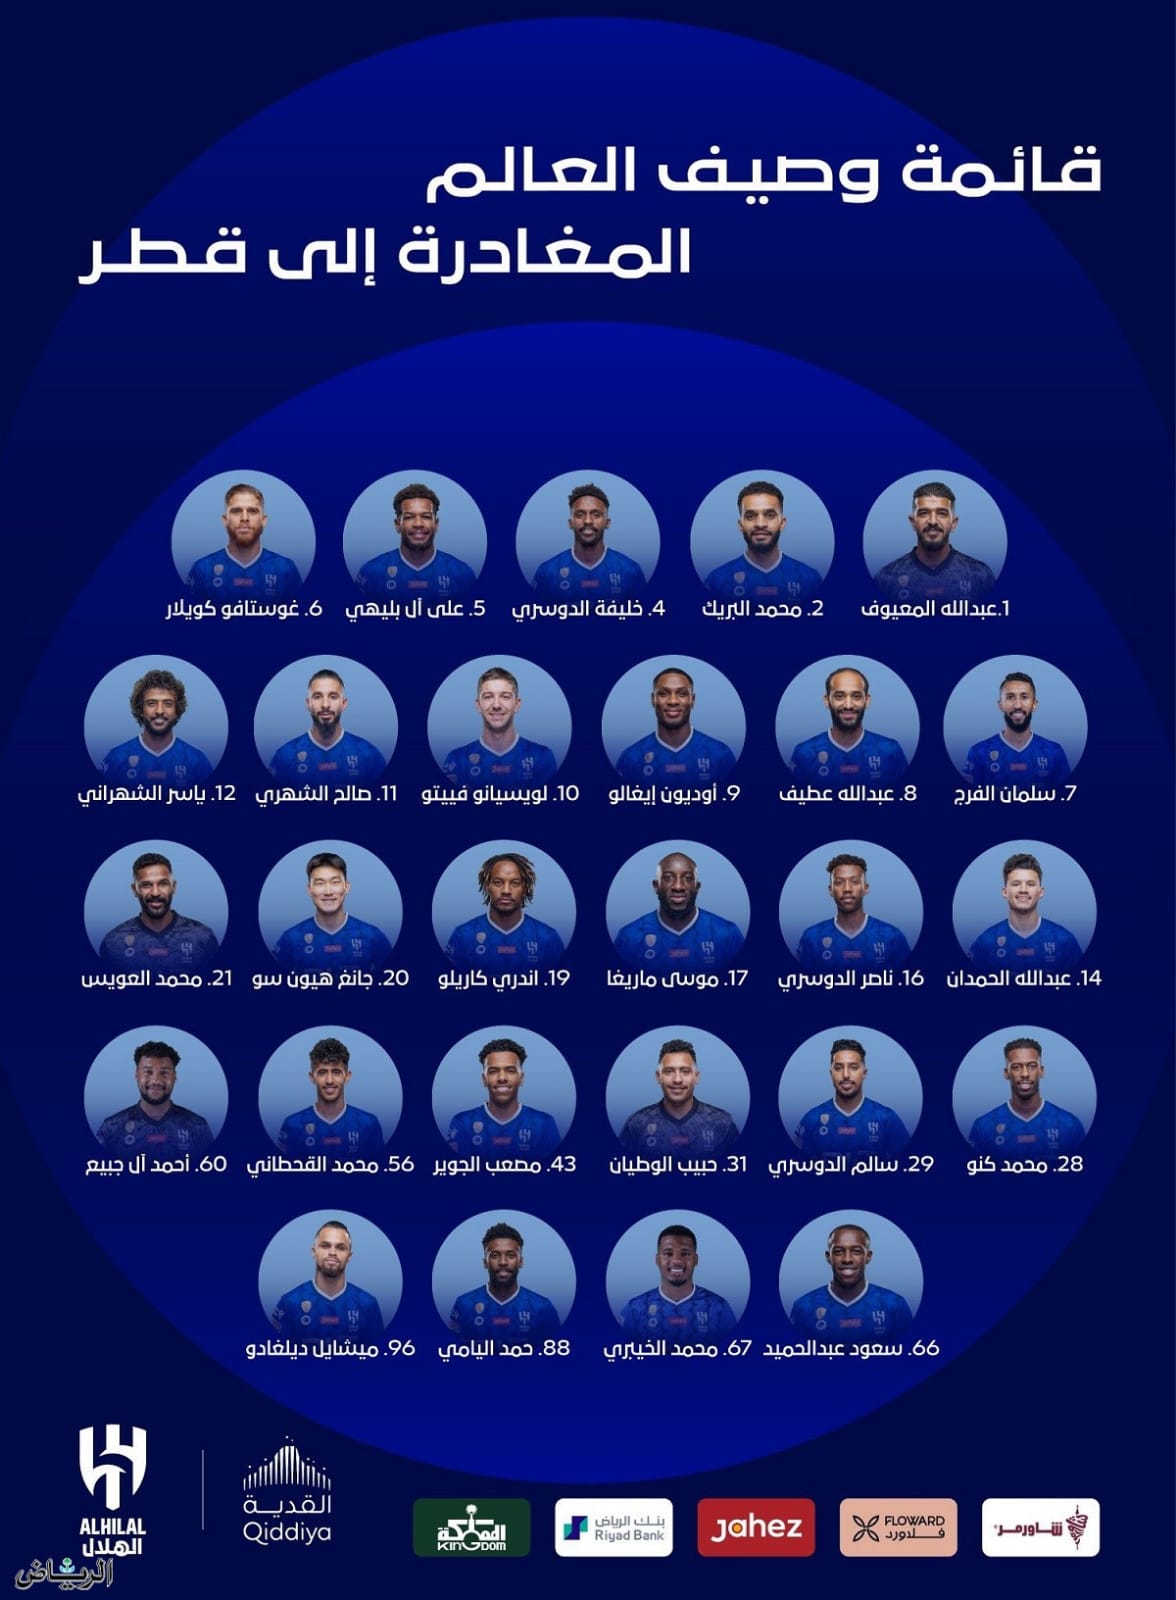 نادي الهلال السعودي لكرة القدم يعلن عن قائمة اللاعبين المغادرين إلى قطر للمشاركة في بطولة دوري آسيا